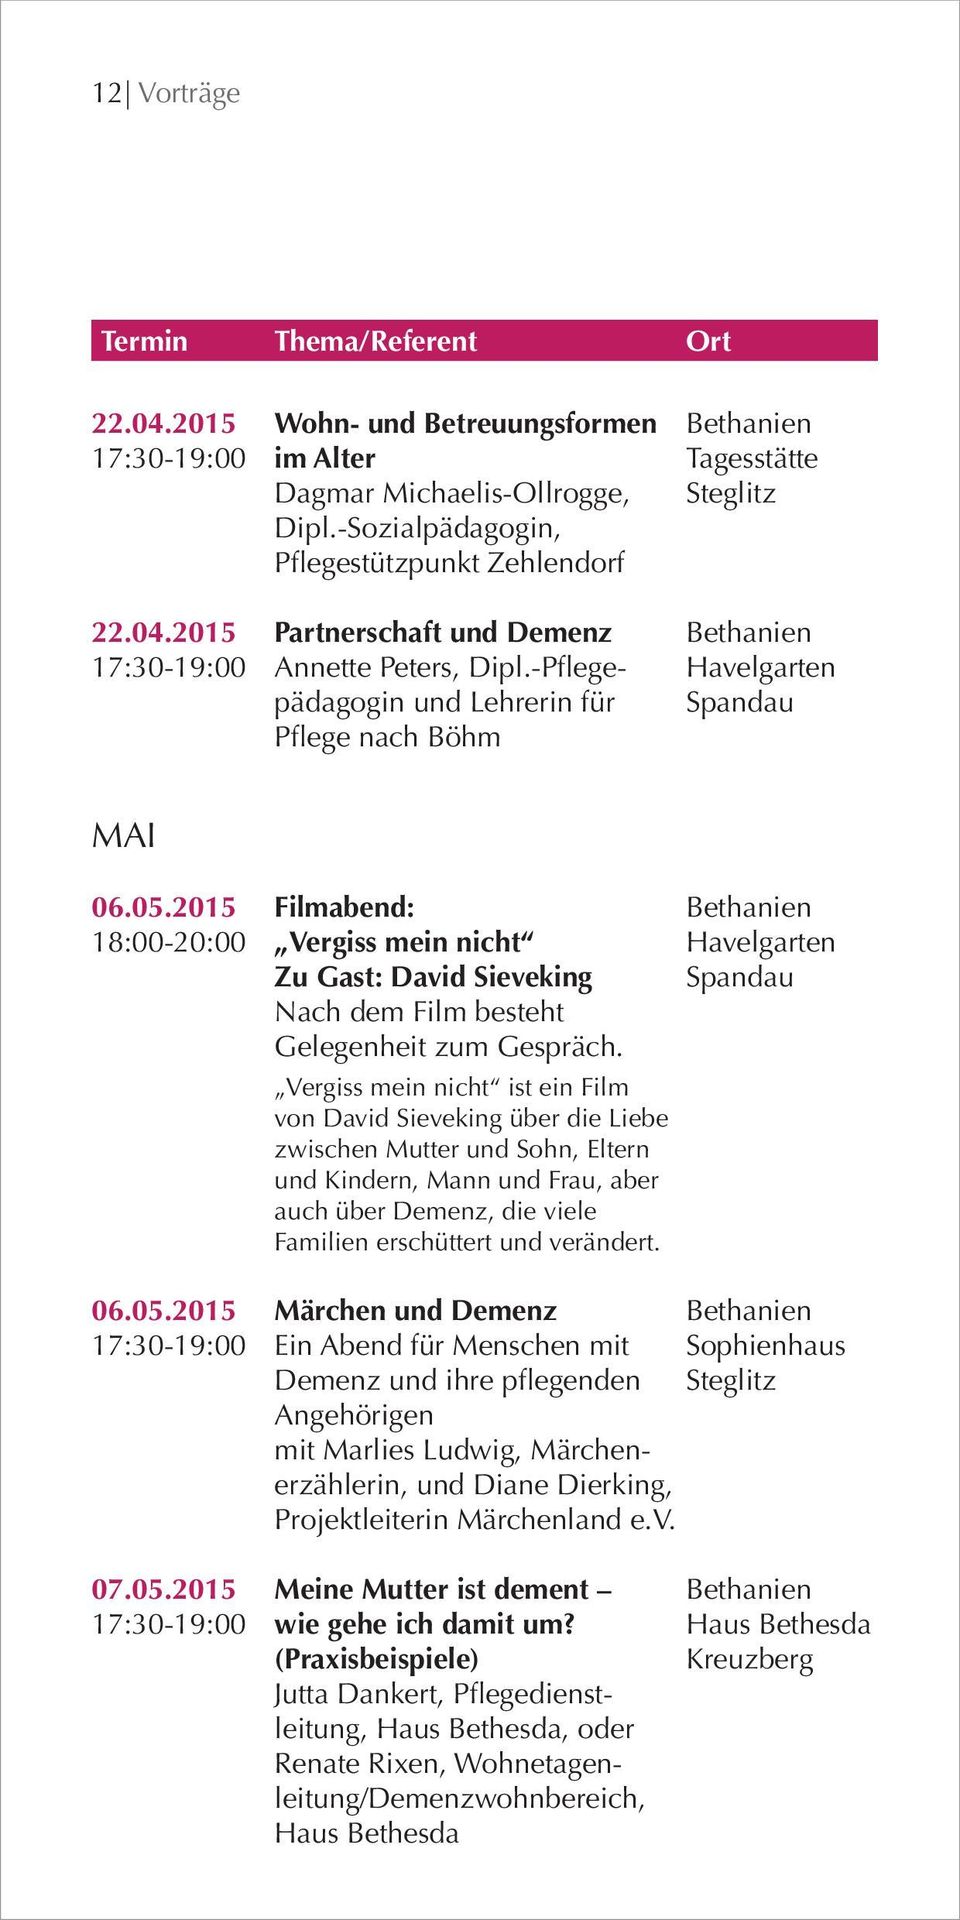 -Pflege- Havelgarten pädagogin und Lehrerin für Spandau Pflege nach Böhm MAI 06.05.